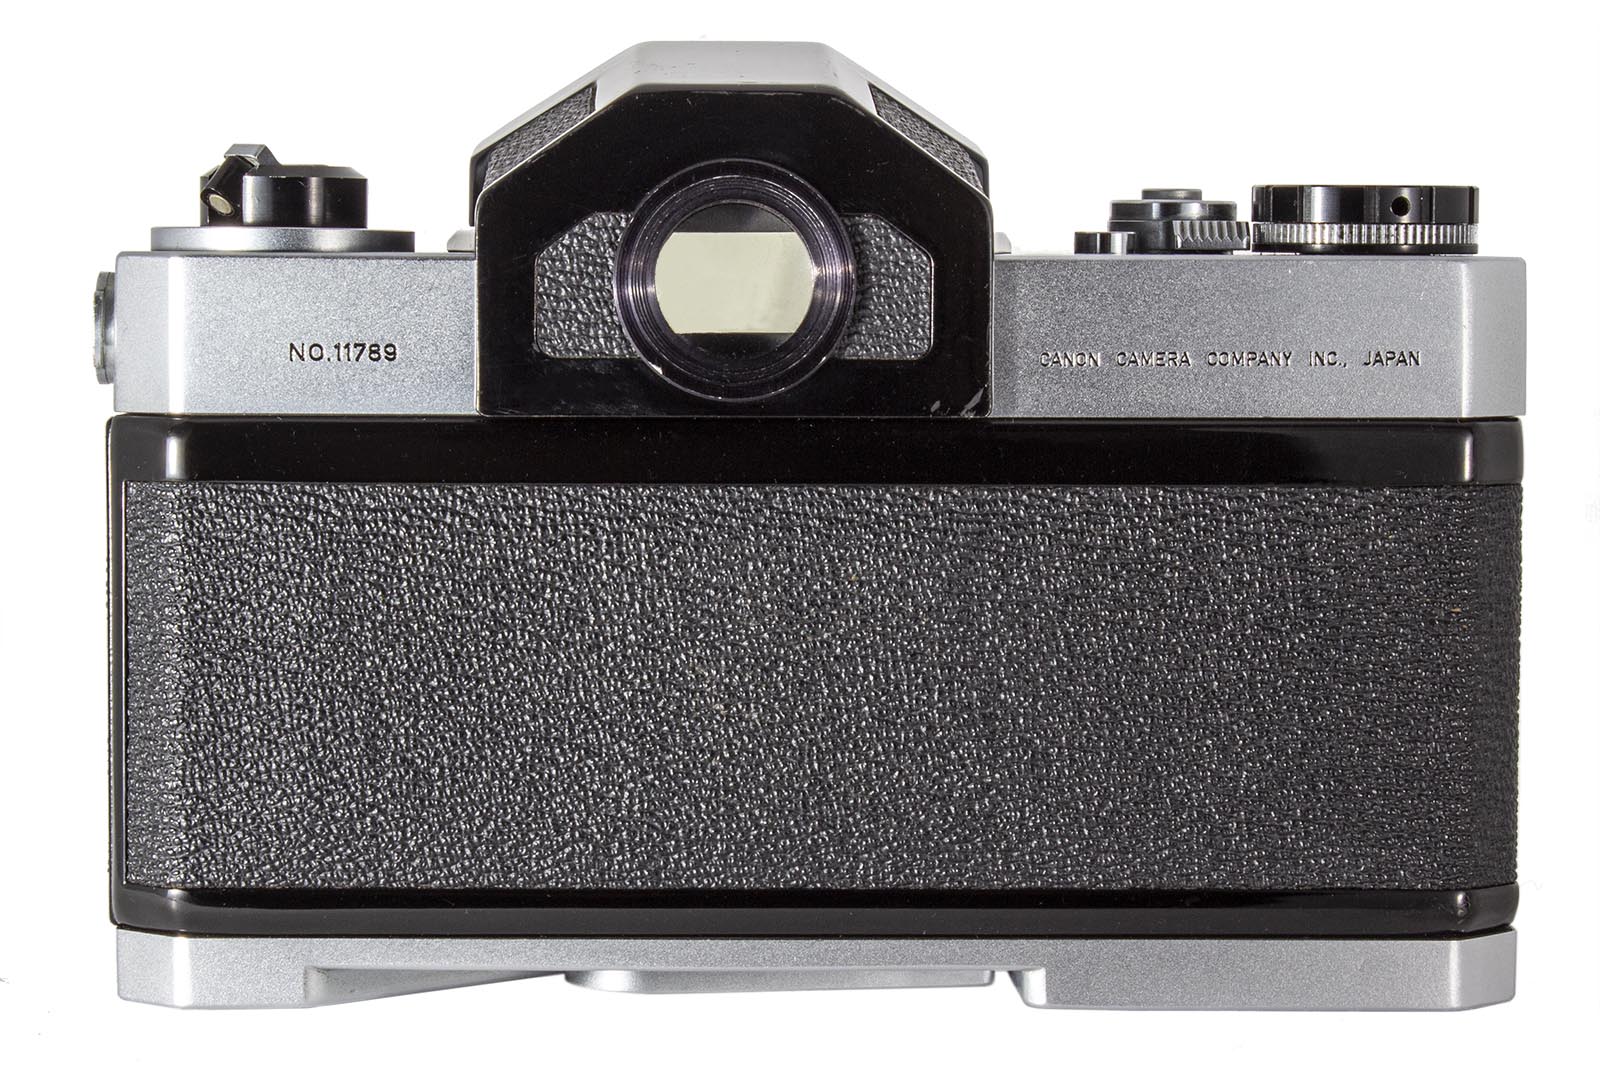 Canon Canonflex Camera